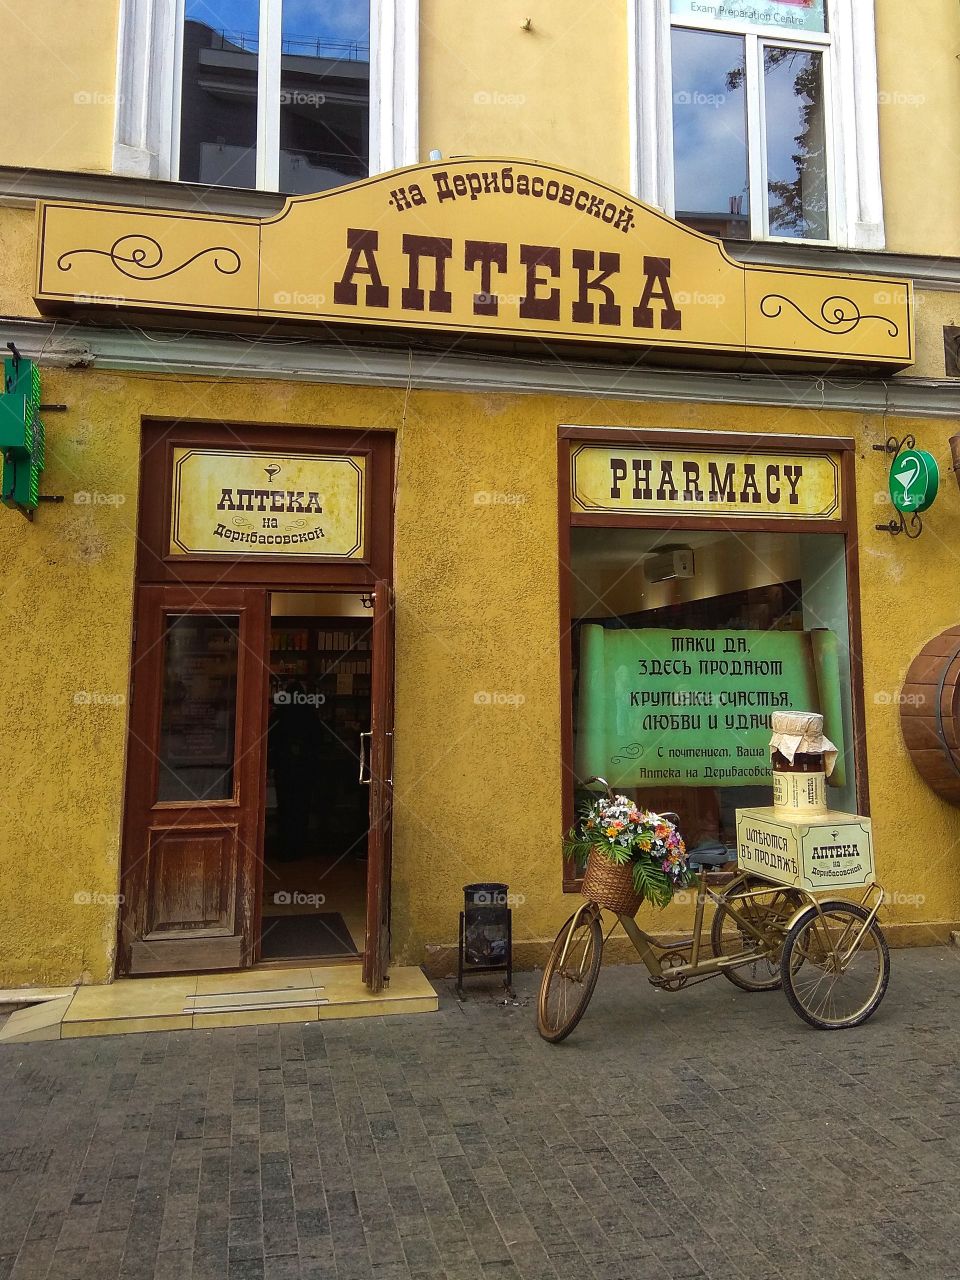 Pharmacy in Odessa